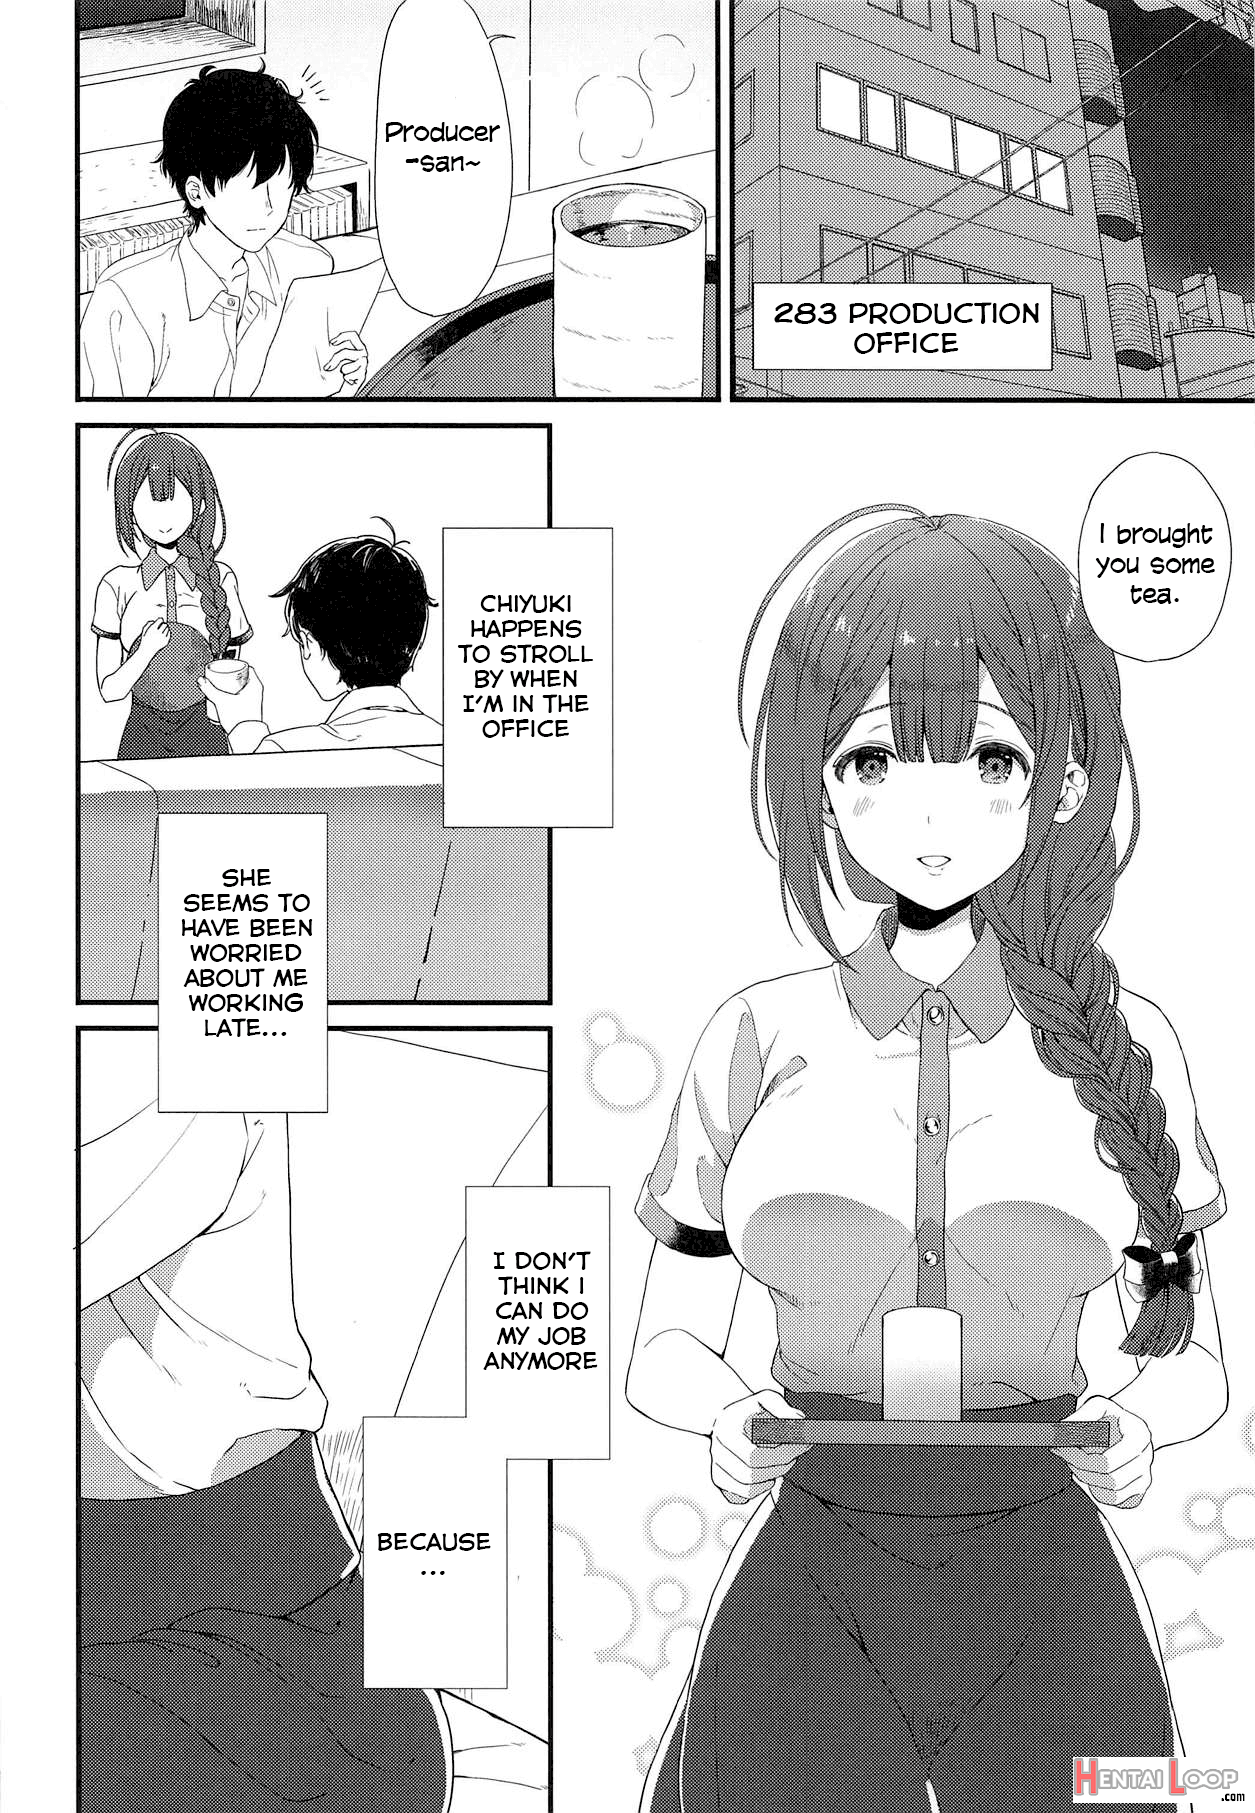 Ippai Chiyuki page 2